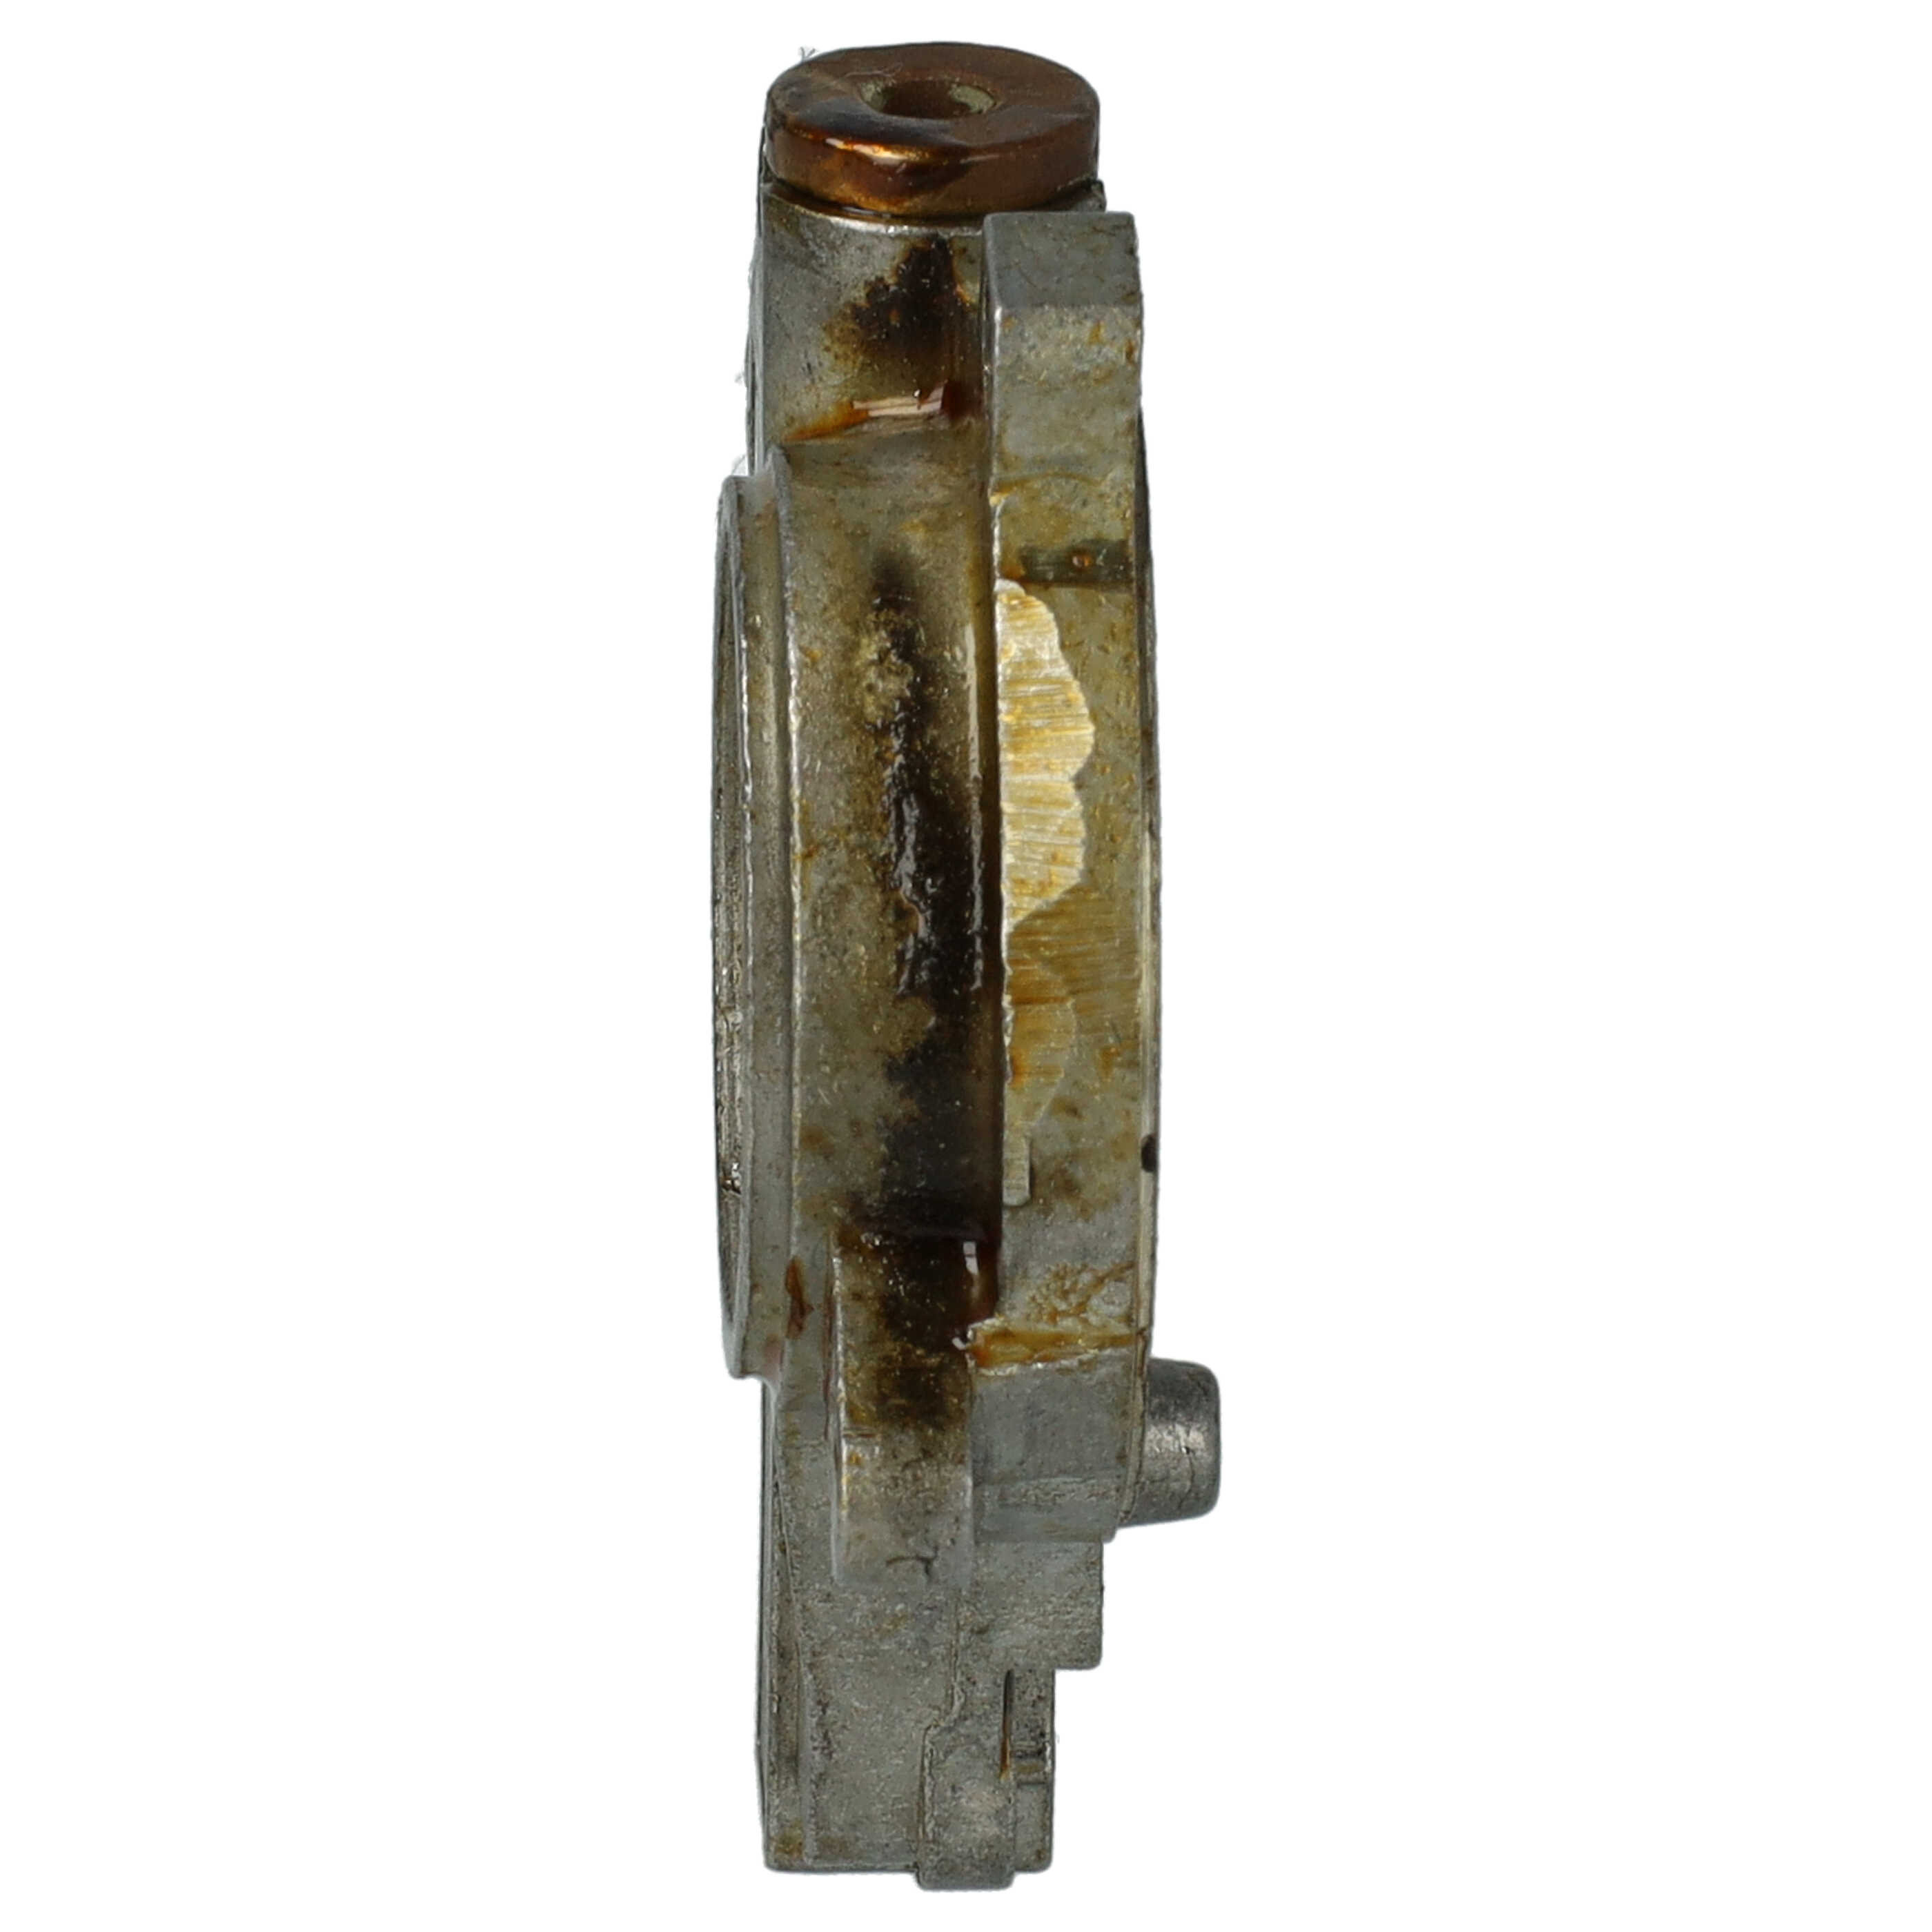 Ölpumpe als Ersatz für Stihl 11356403200 - Aluminium, 6,4 x 6,2 x 1,3 cm, Einstellbar 